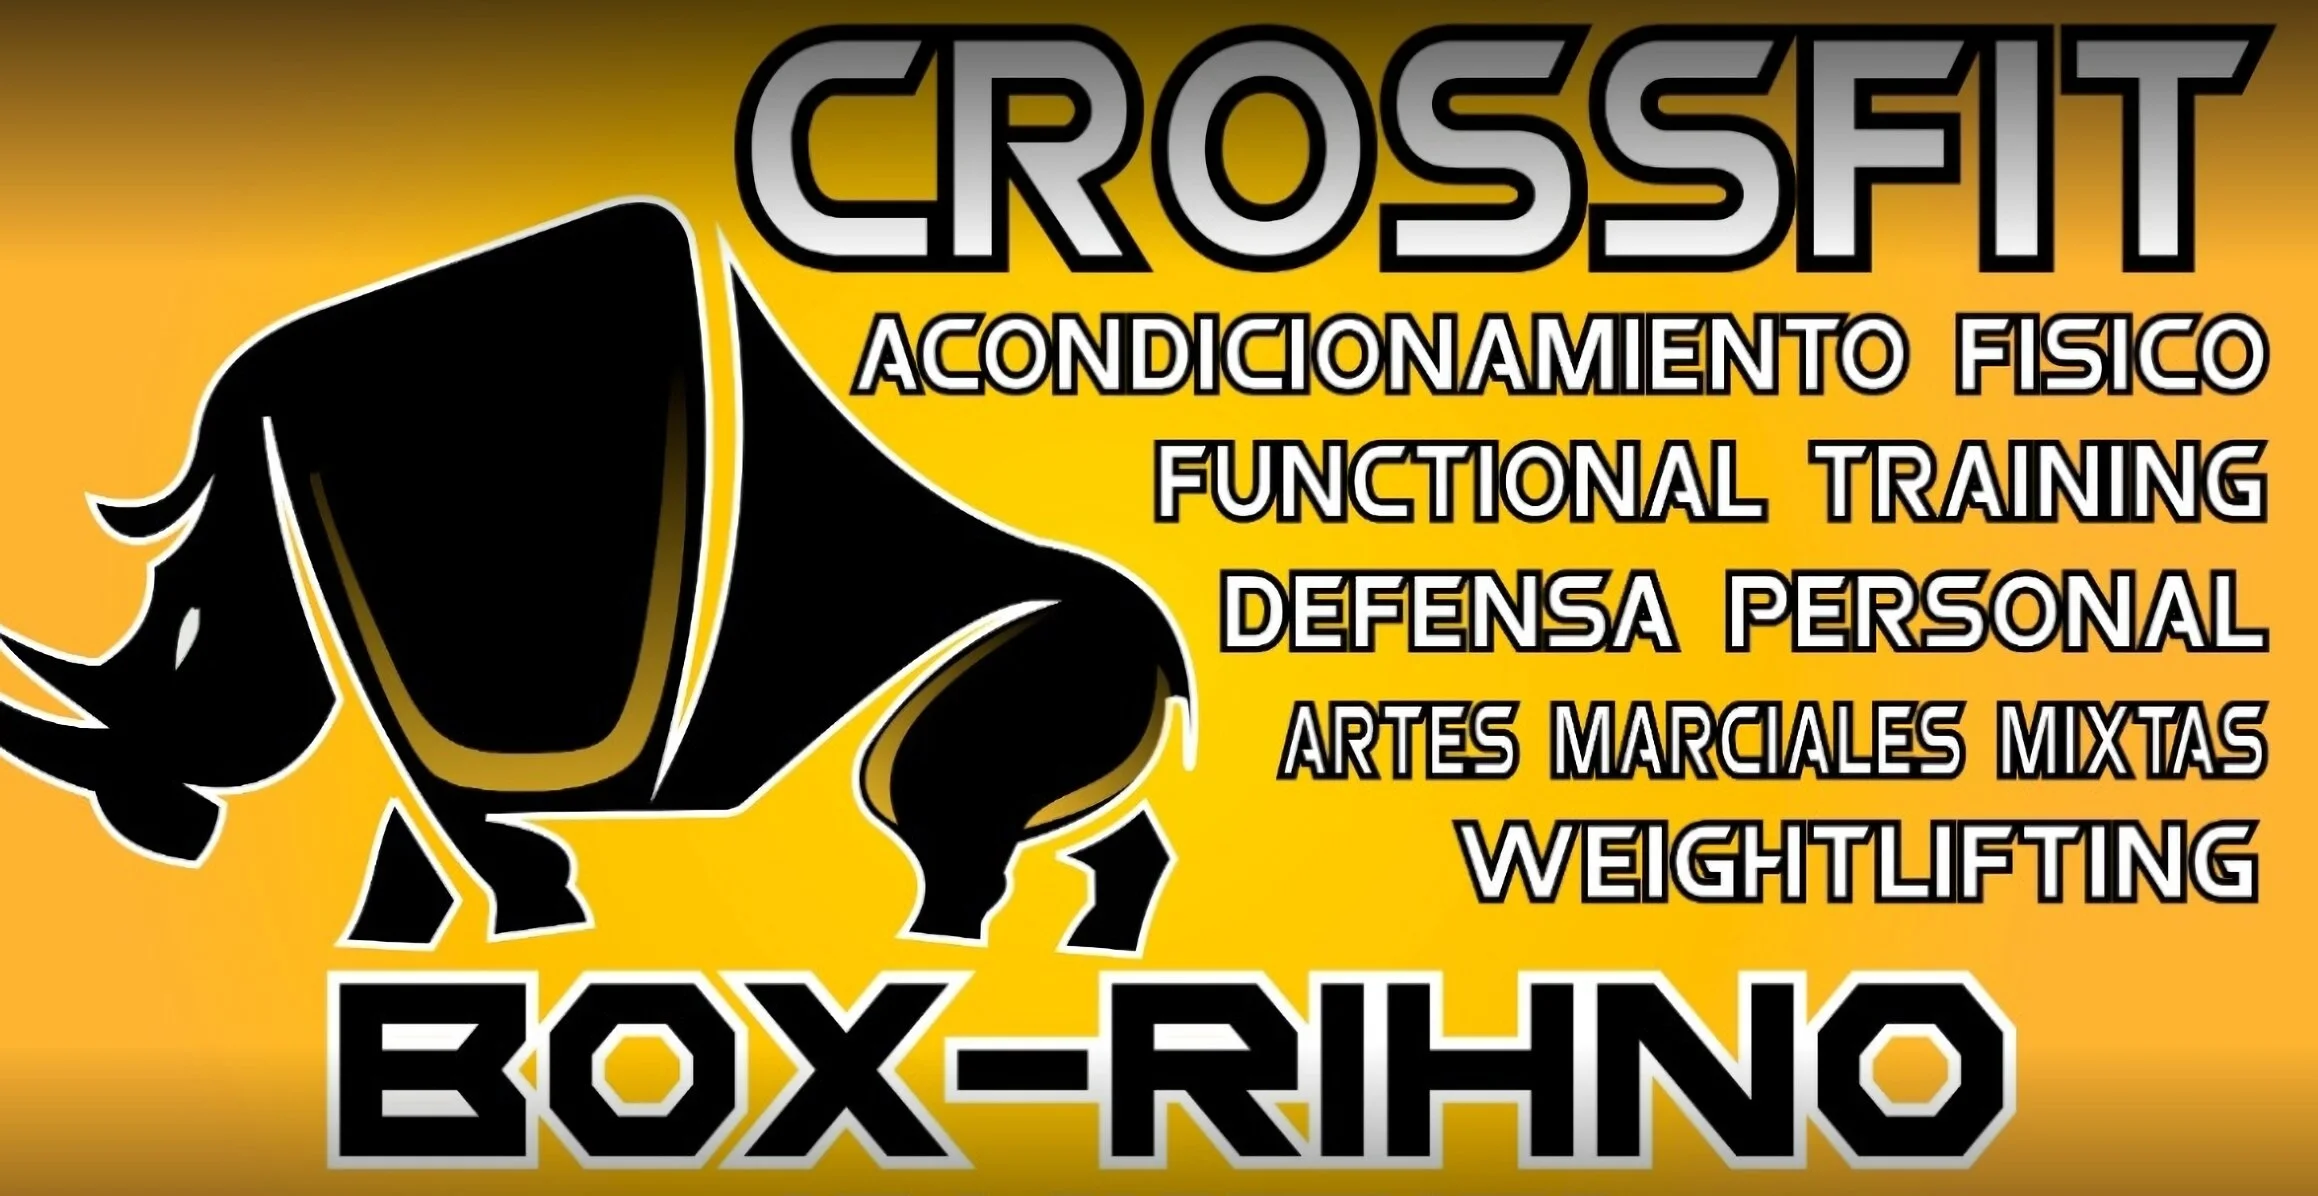 Crossfit-box-rihno-villavicencio-gimnasio-crossfit-mma-entrenamiento-personalizado-7841